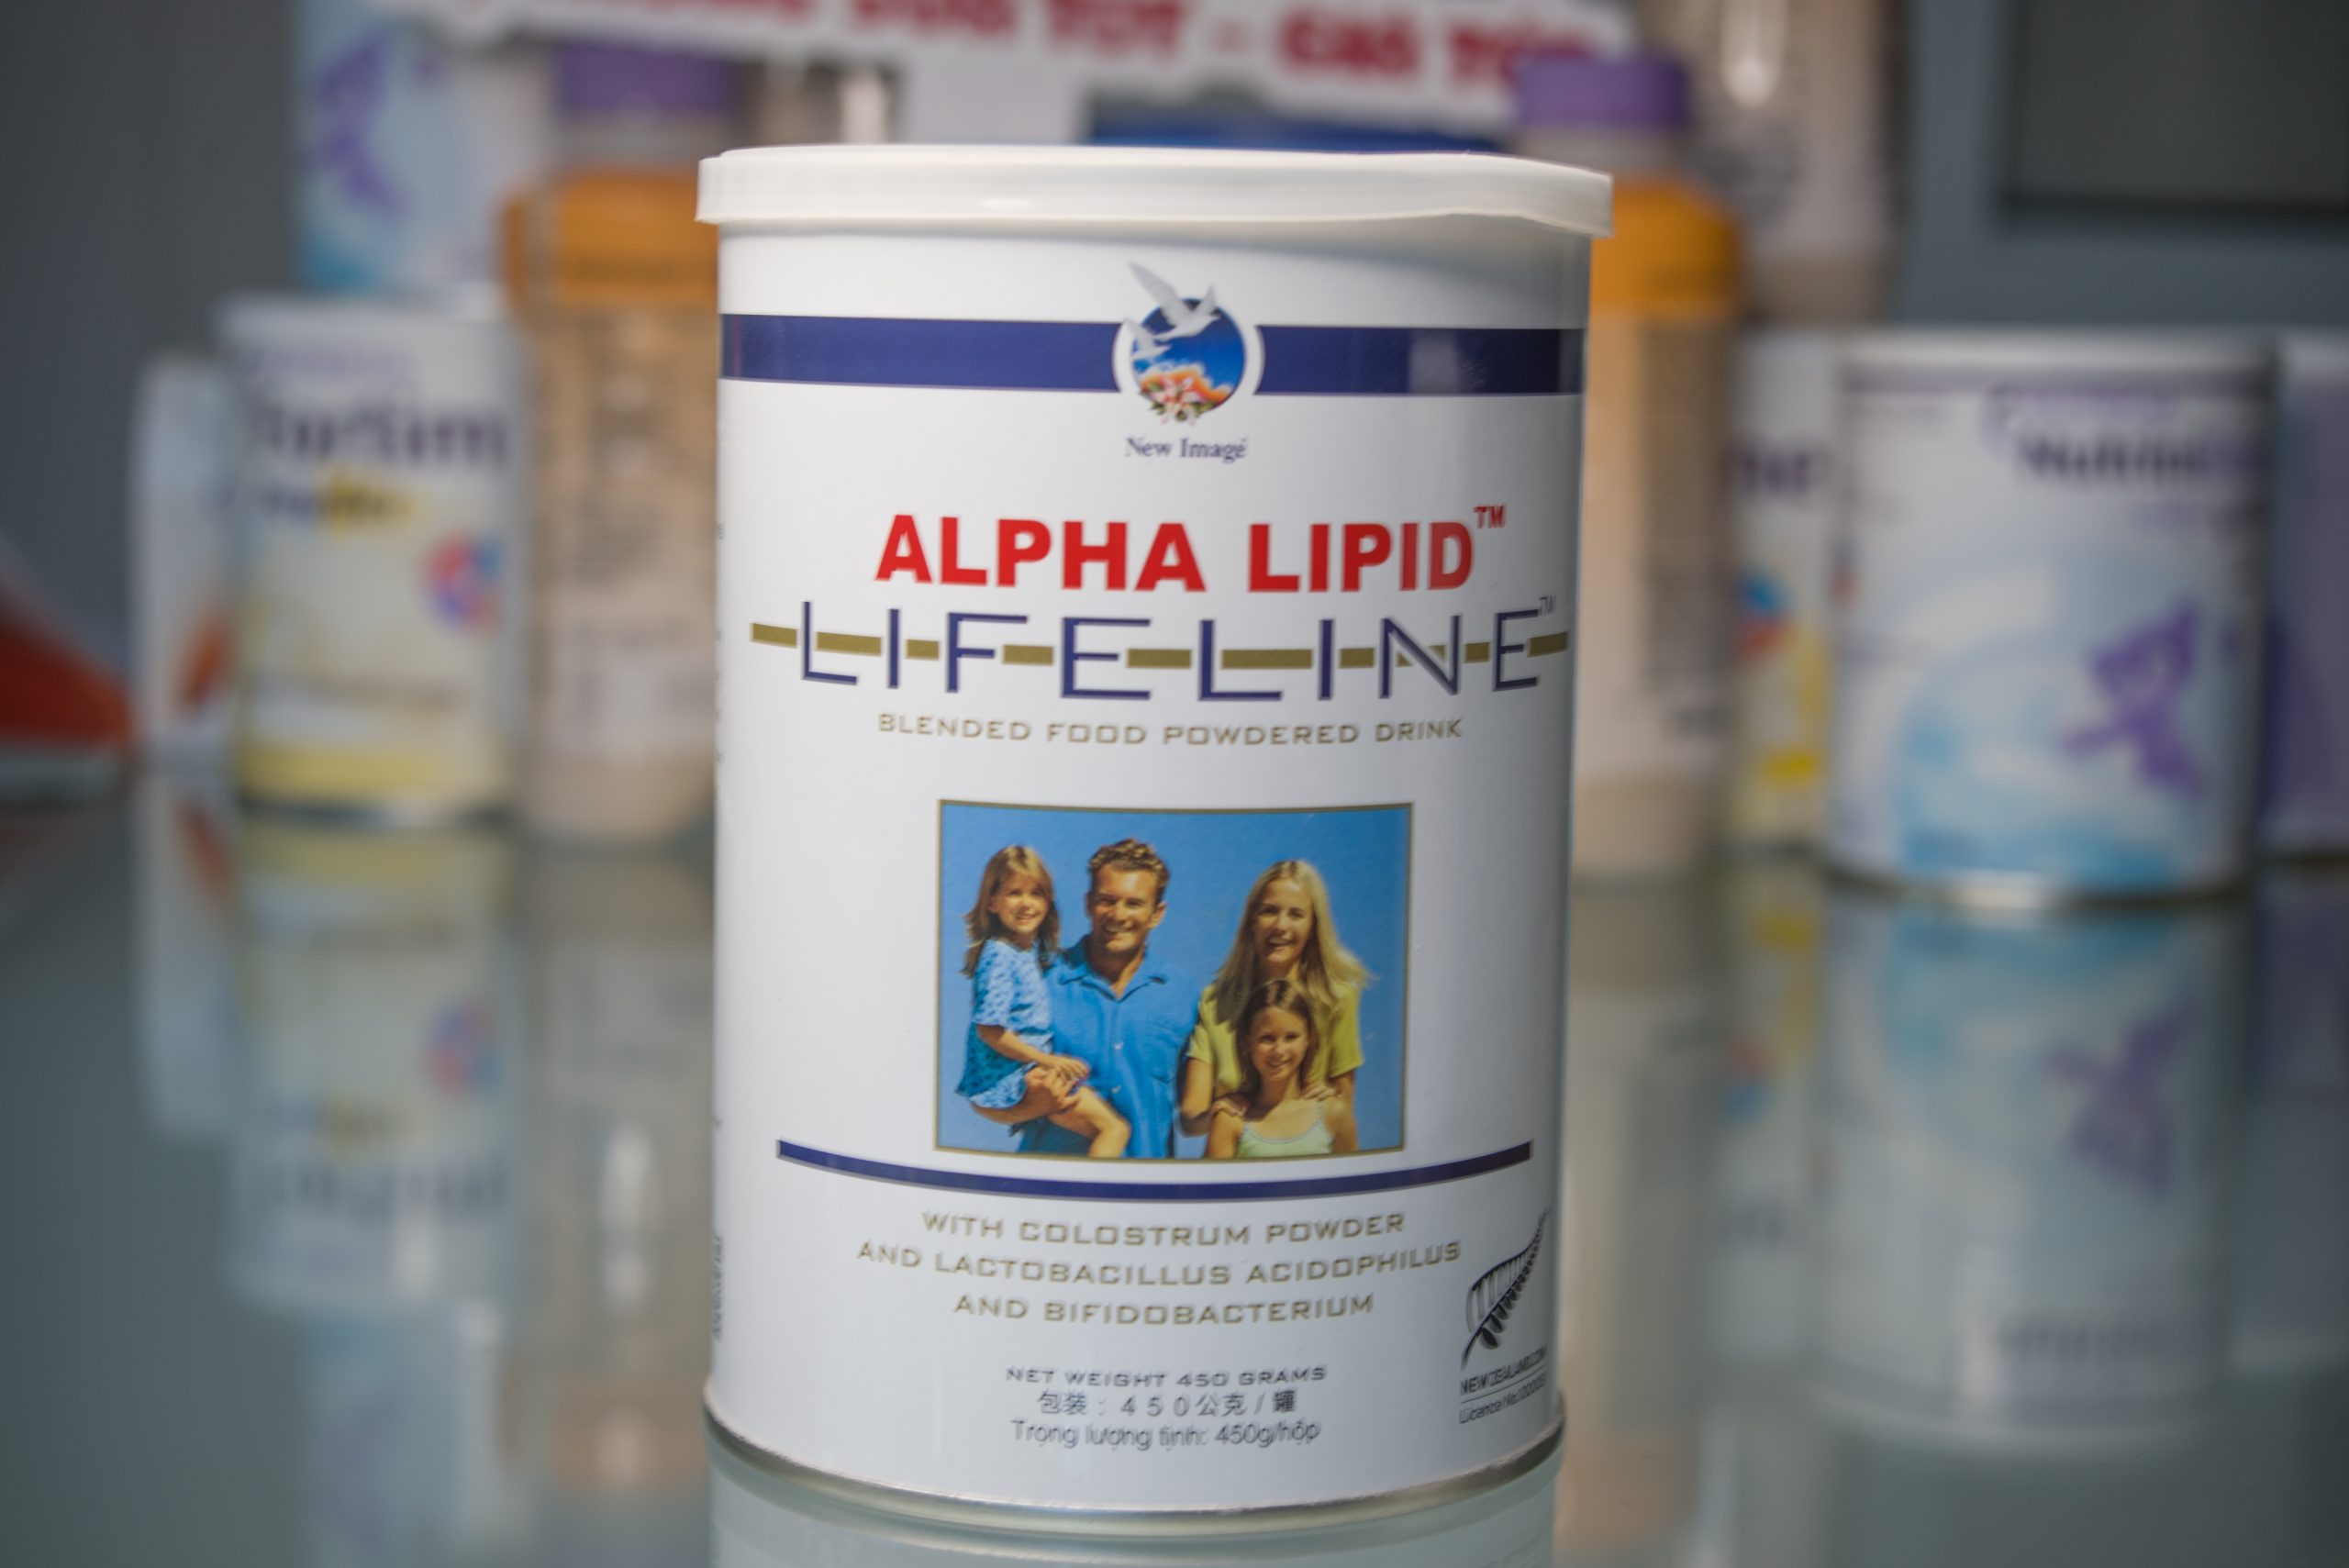 Sữa Alpha Lipid